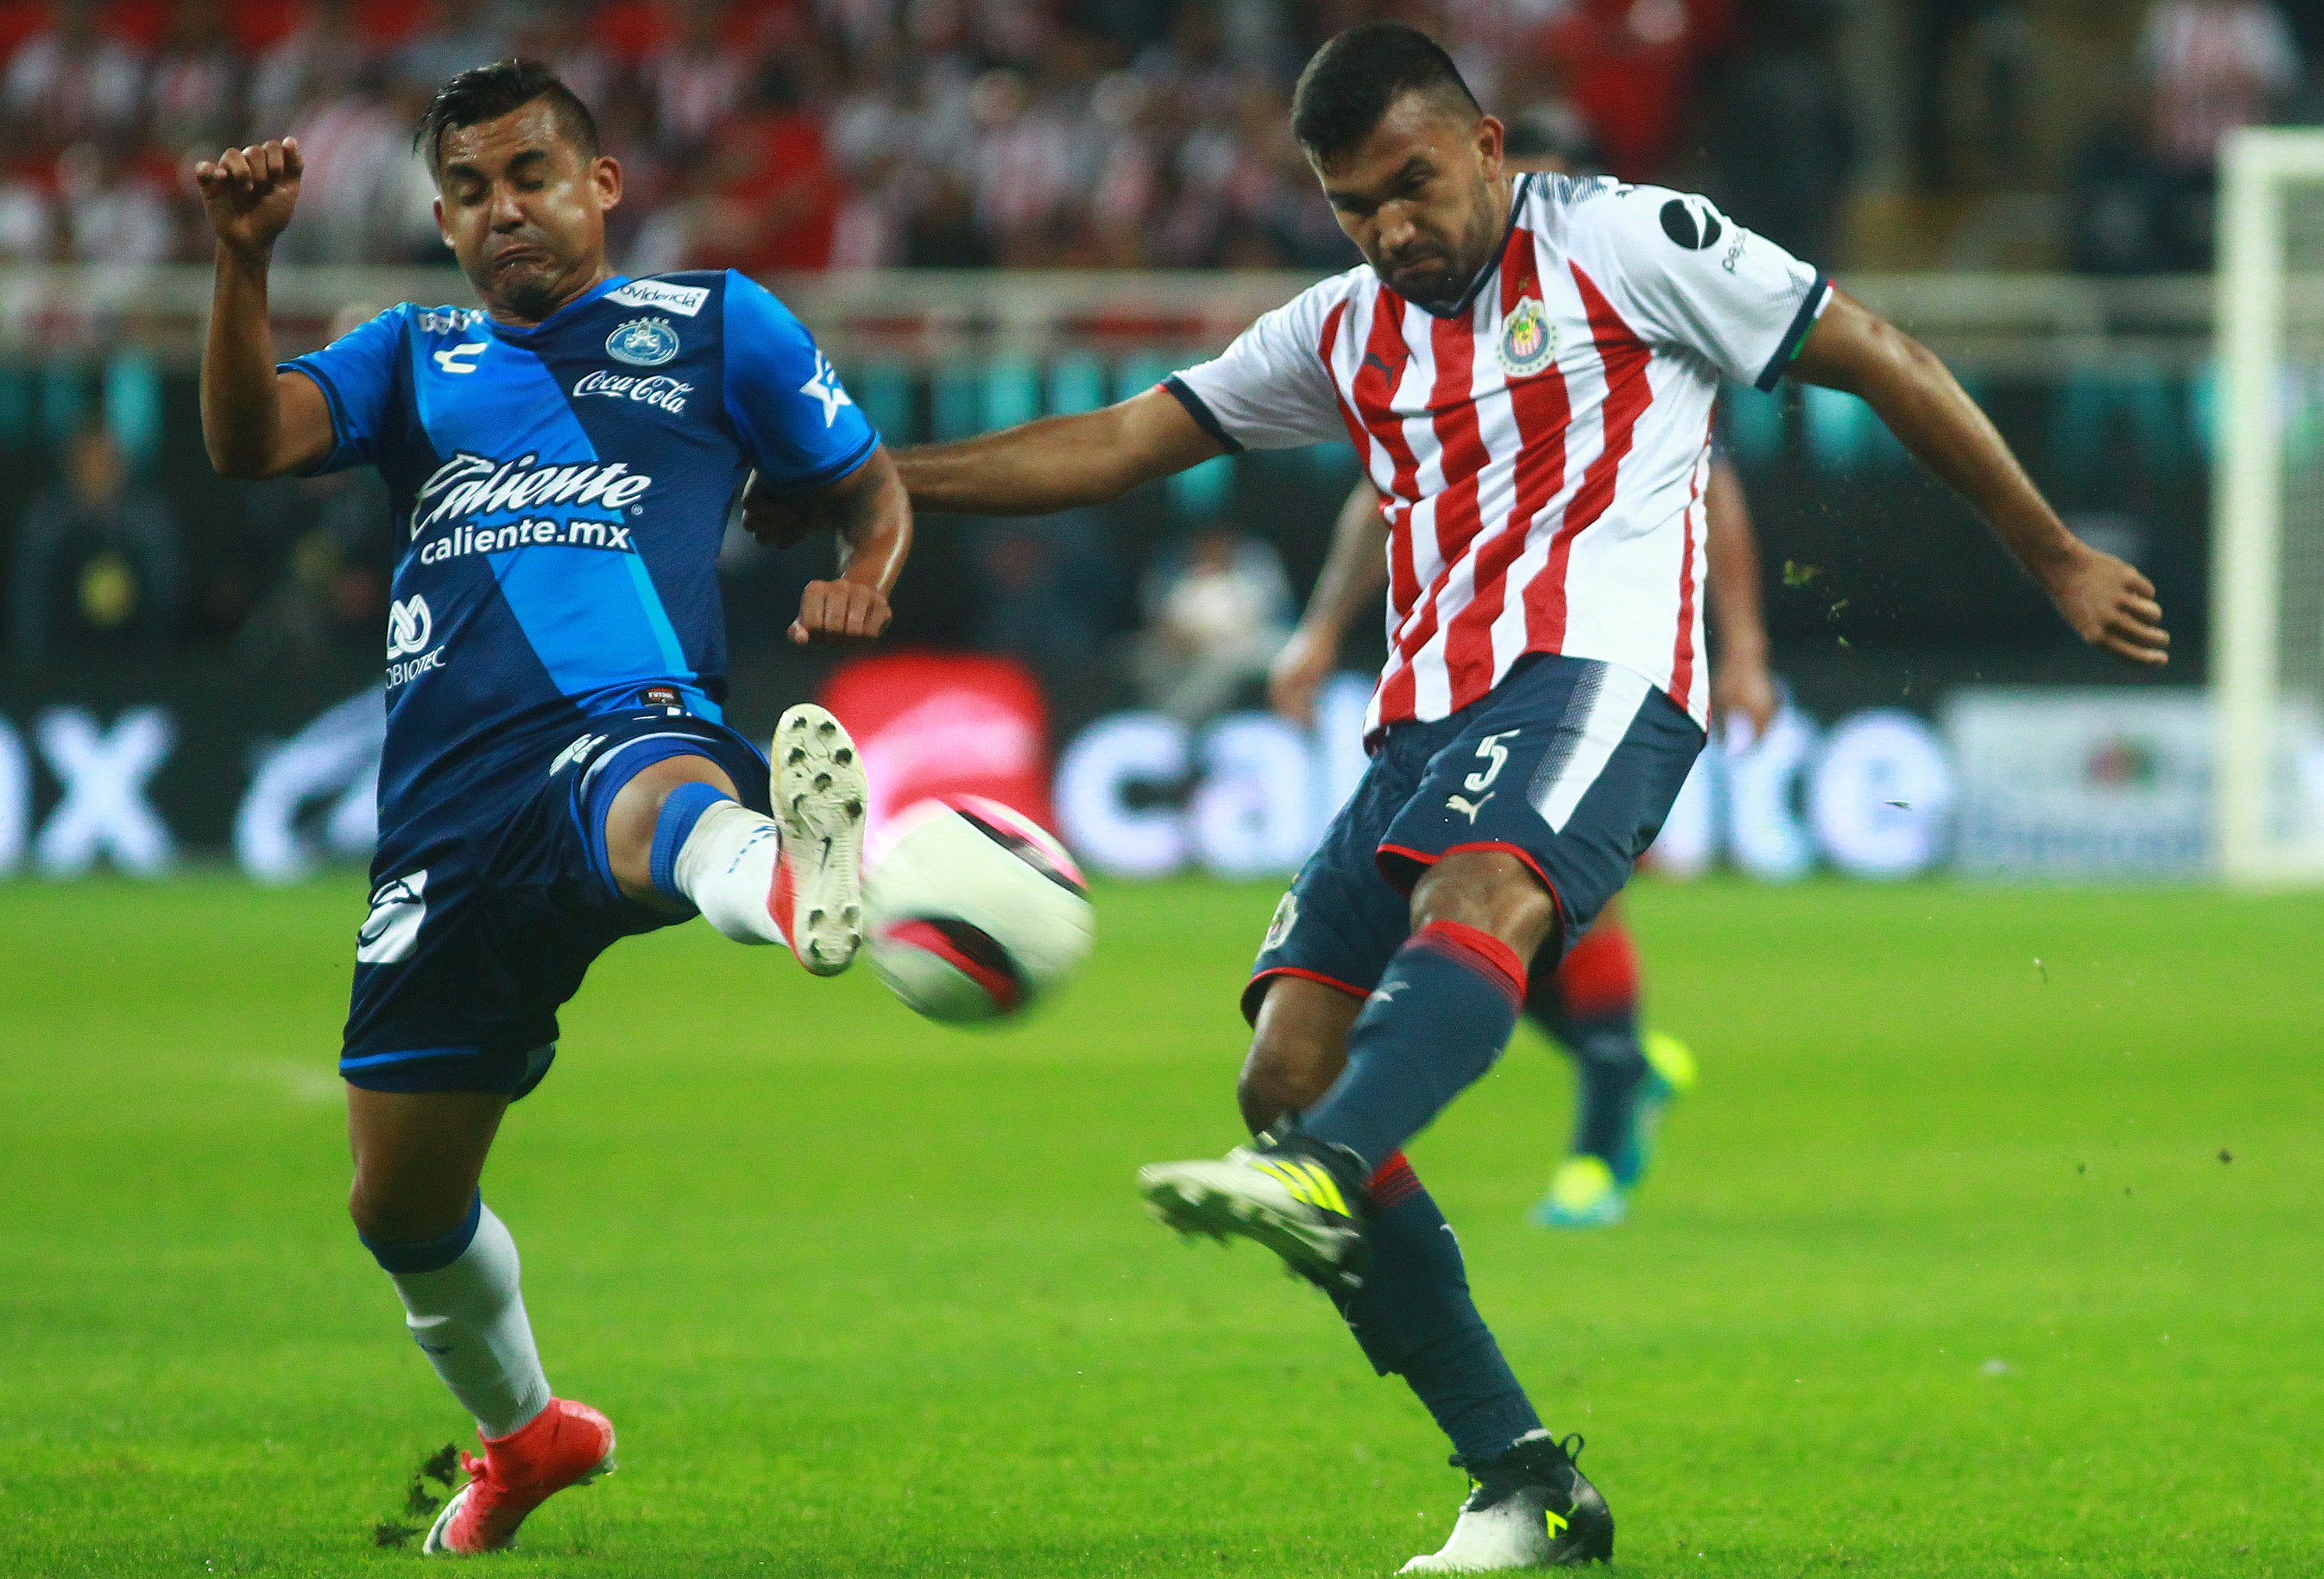 En partido polémico, La Franja gana por un gol al Guadalajara